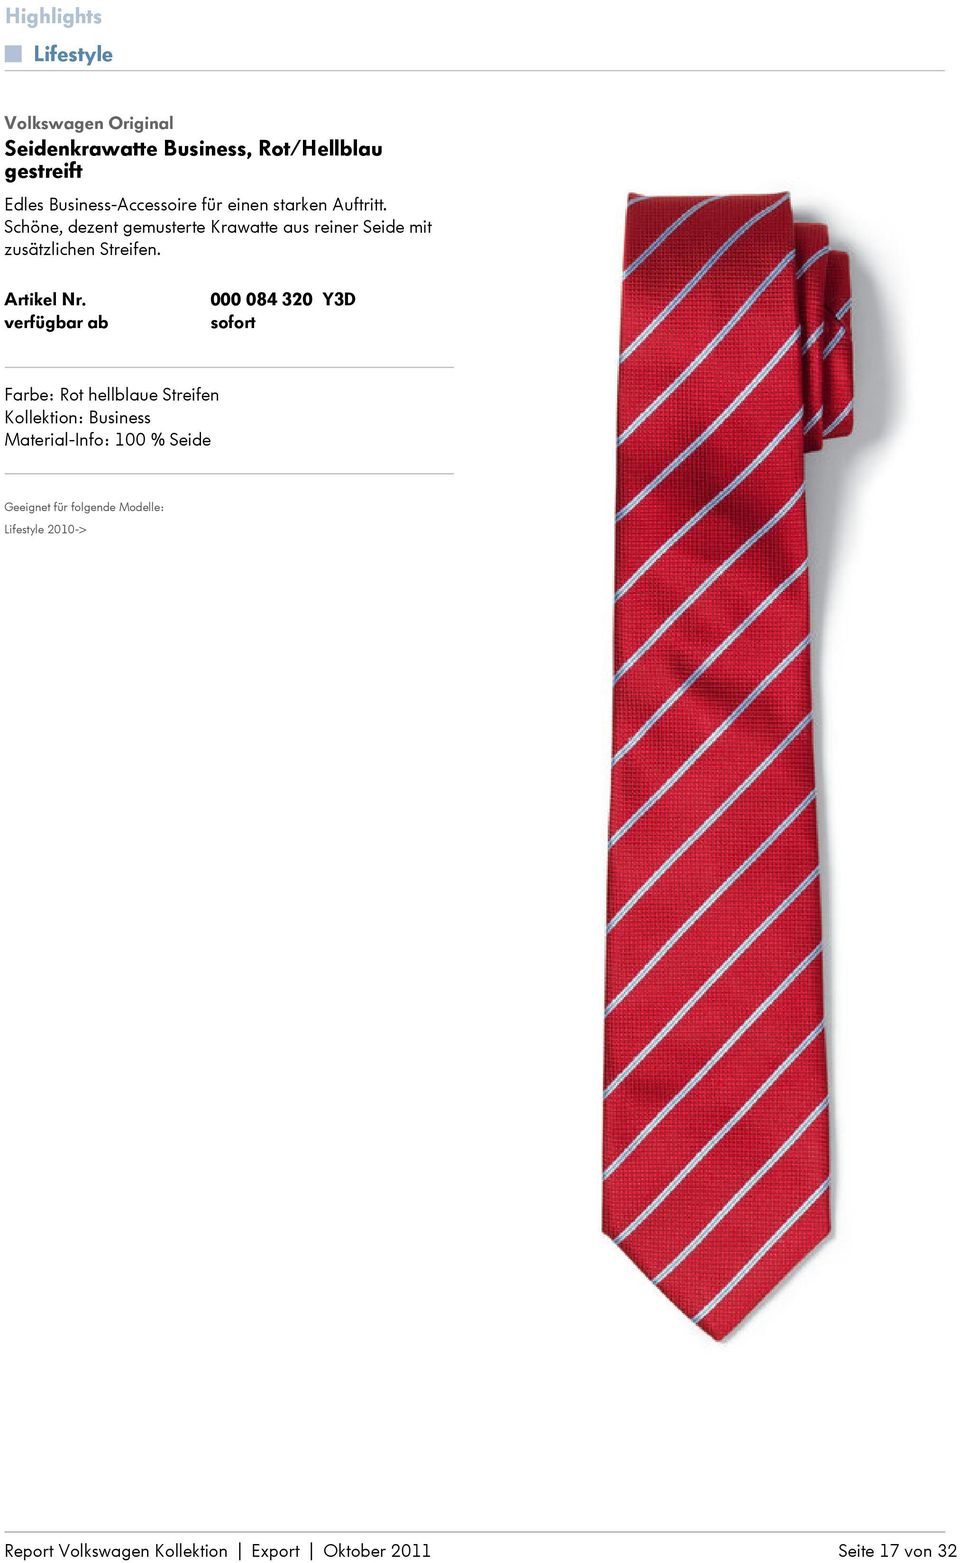 Schöne, dezent gemusterte Krawatte aus reiner Seide mit zusätzlichen